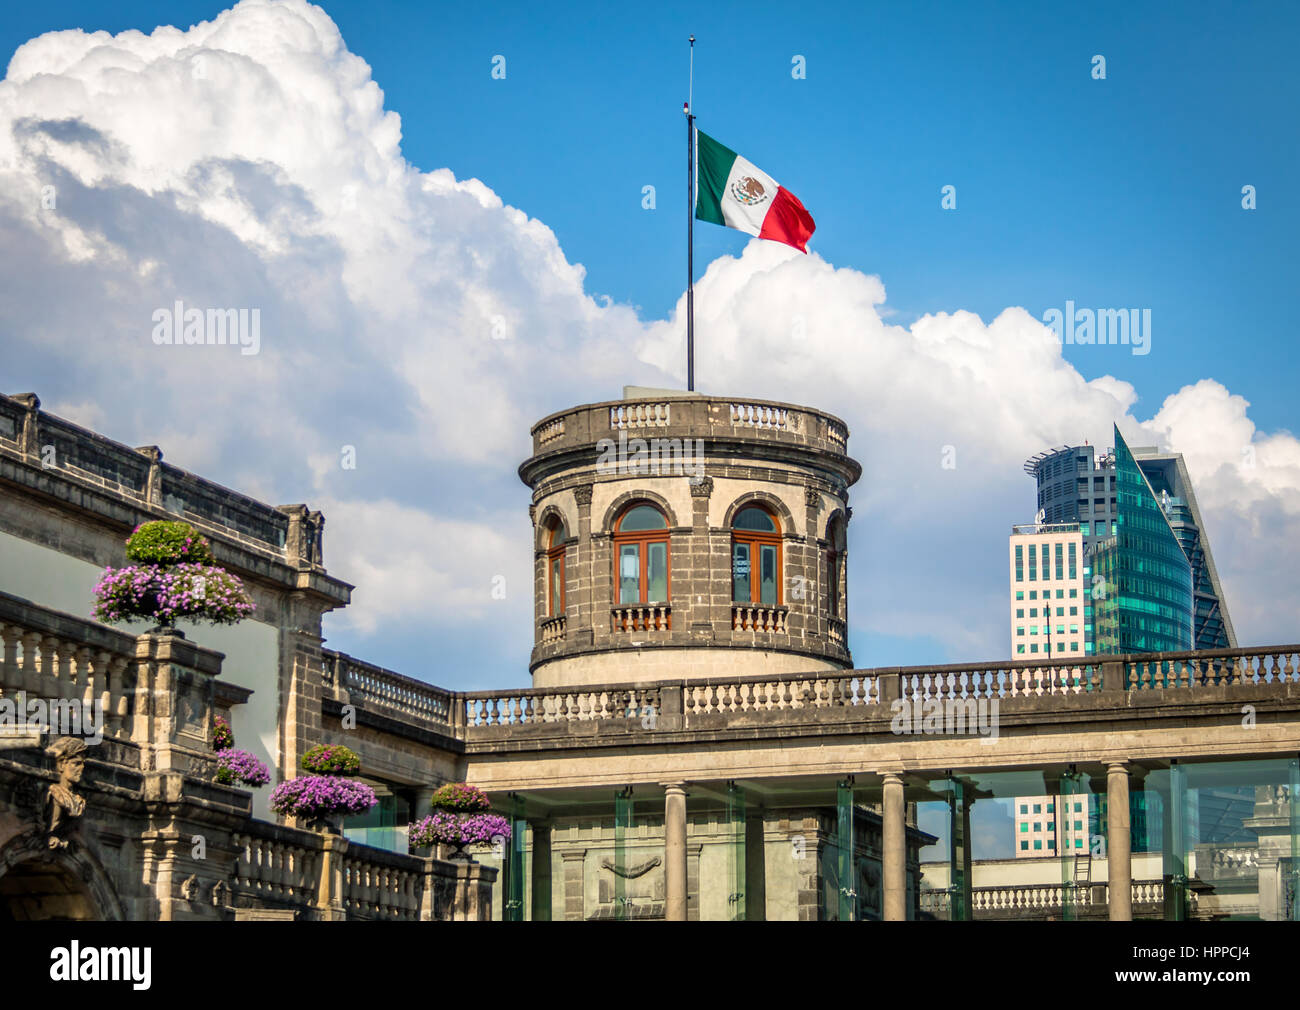 Chapultepec castle - Mexico city, Mexico Stock Photo